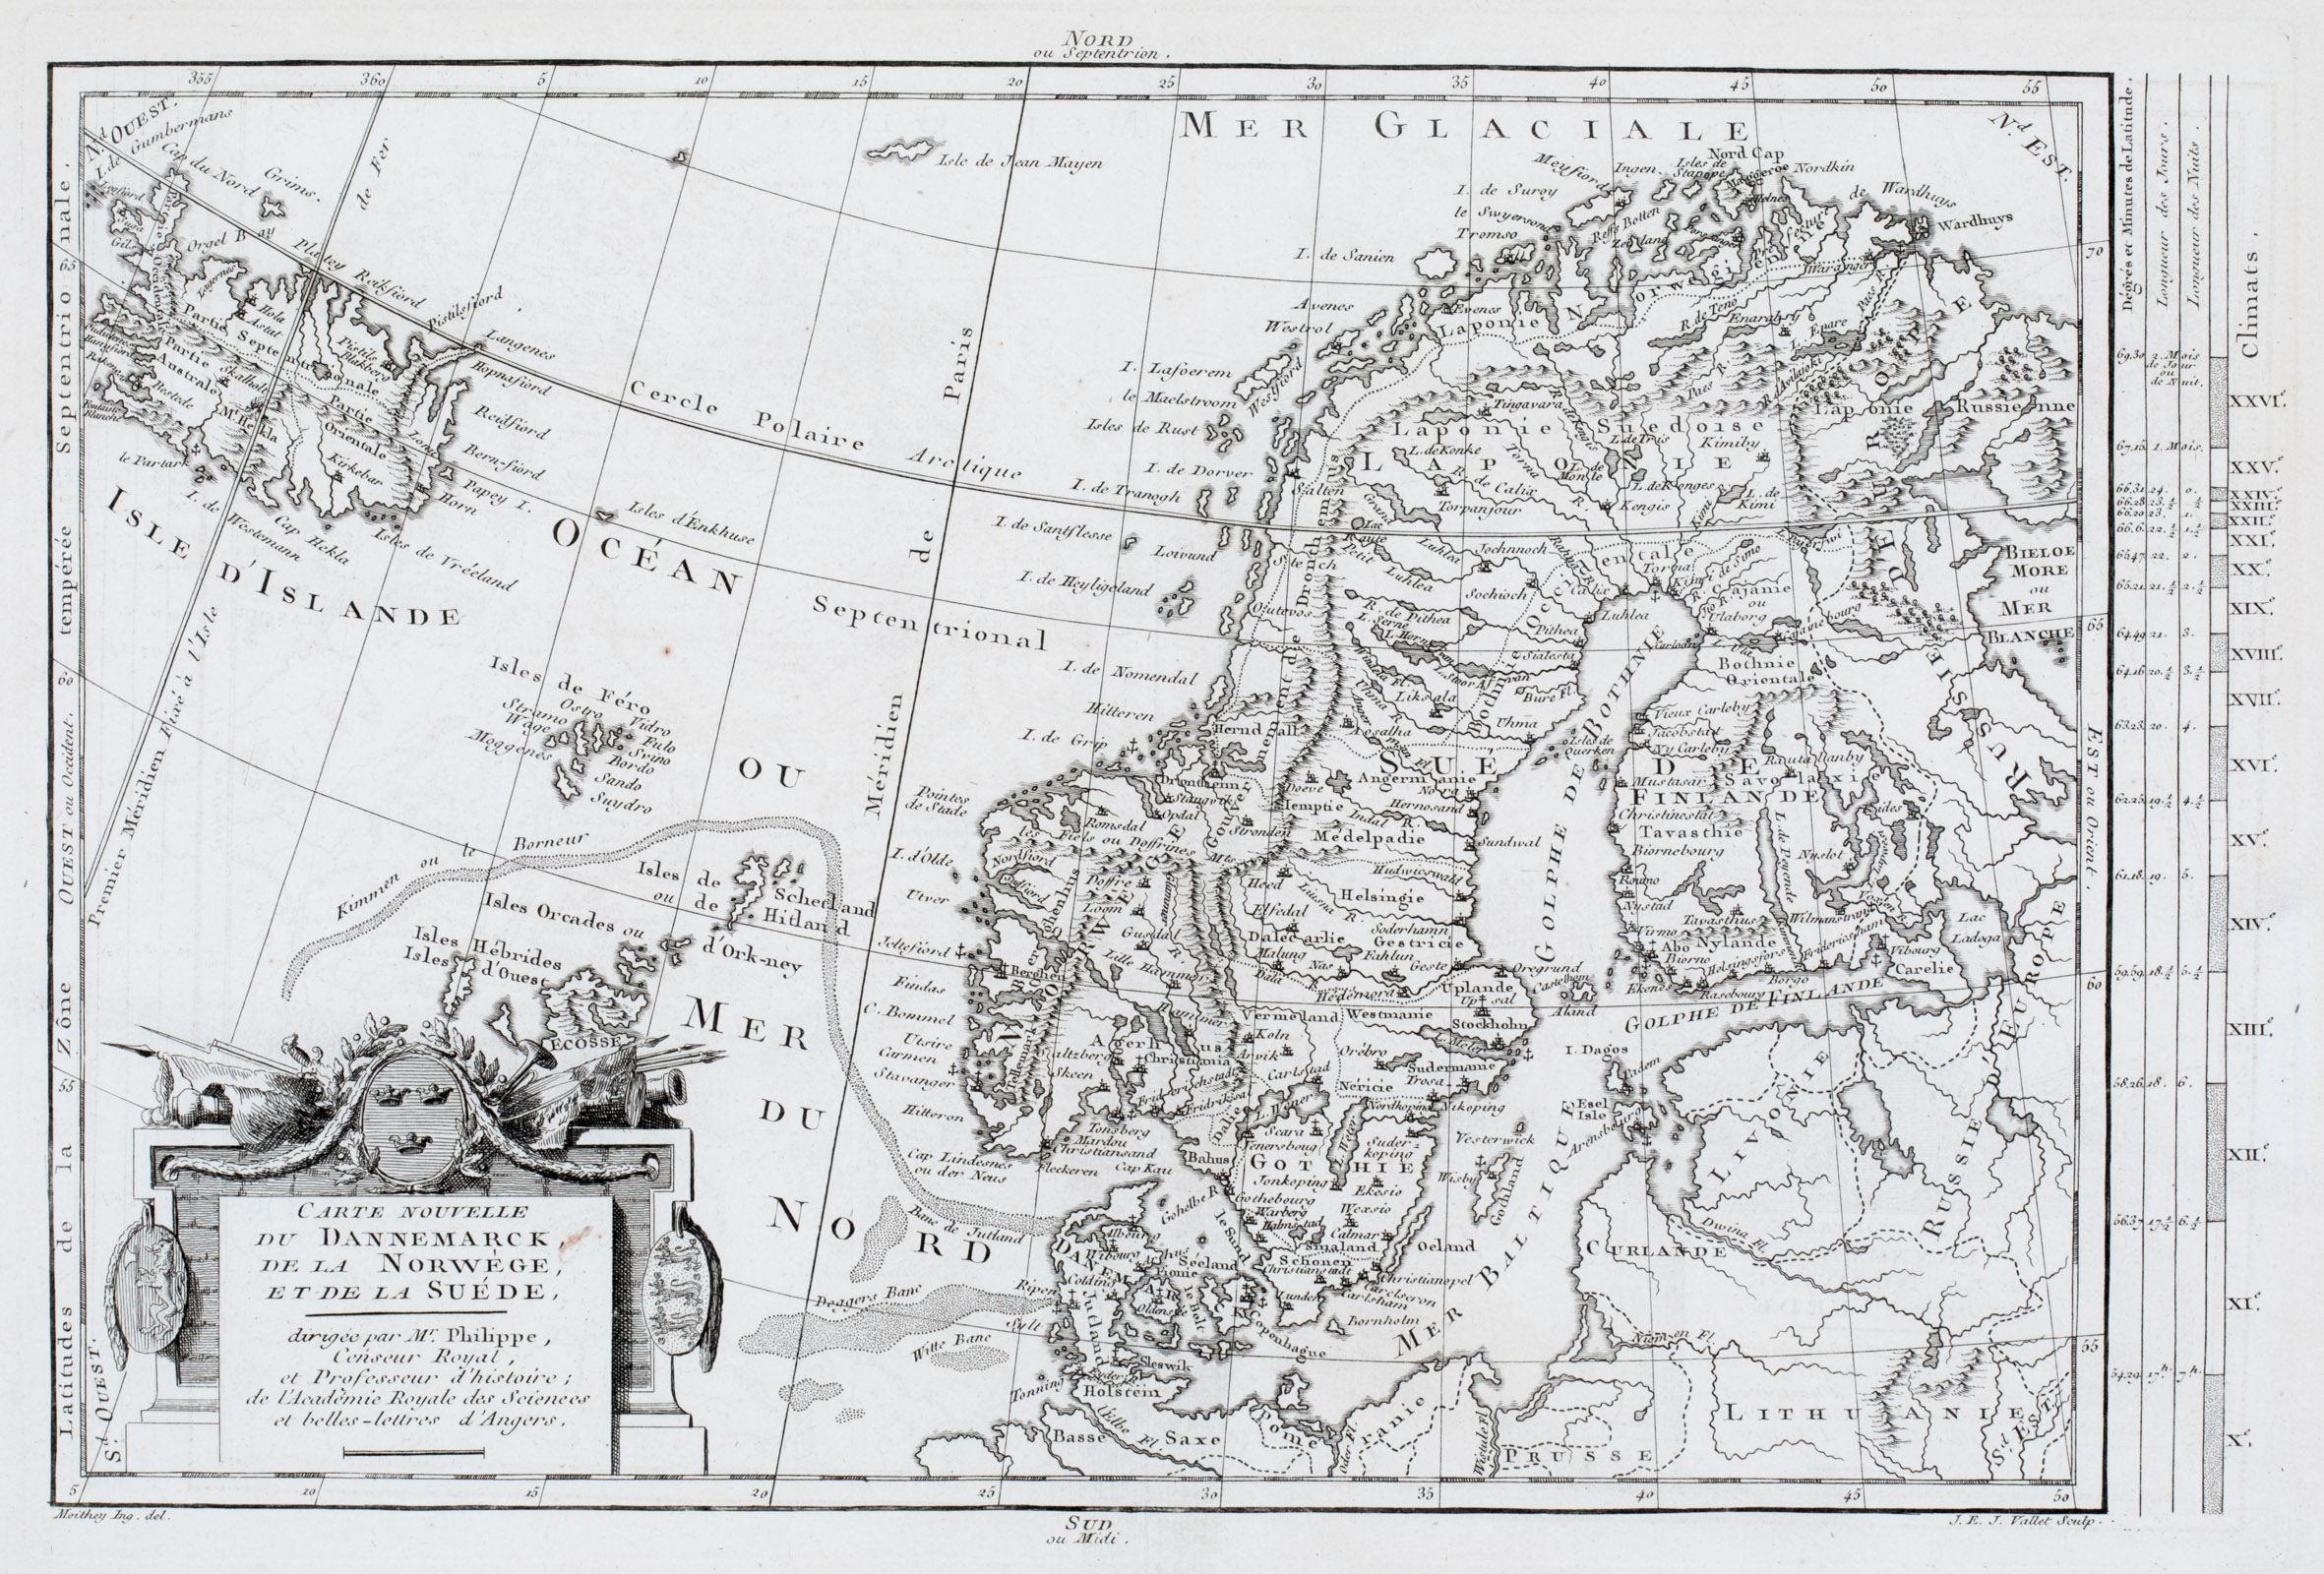 146. Carte Nouvelle du Dannemarck, de la Norwege, et de la Suede